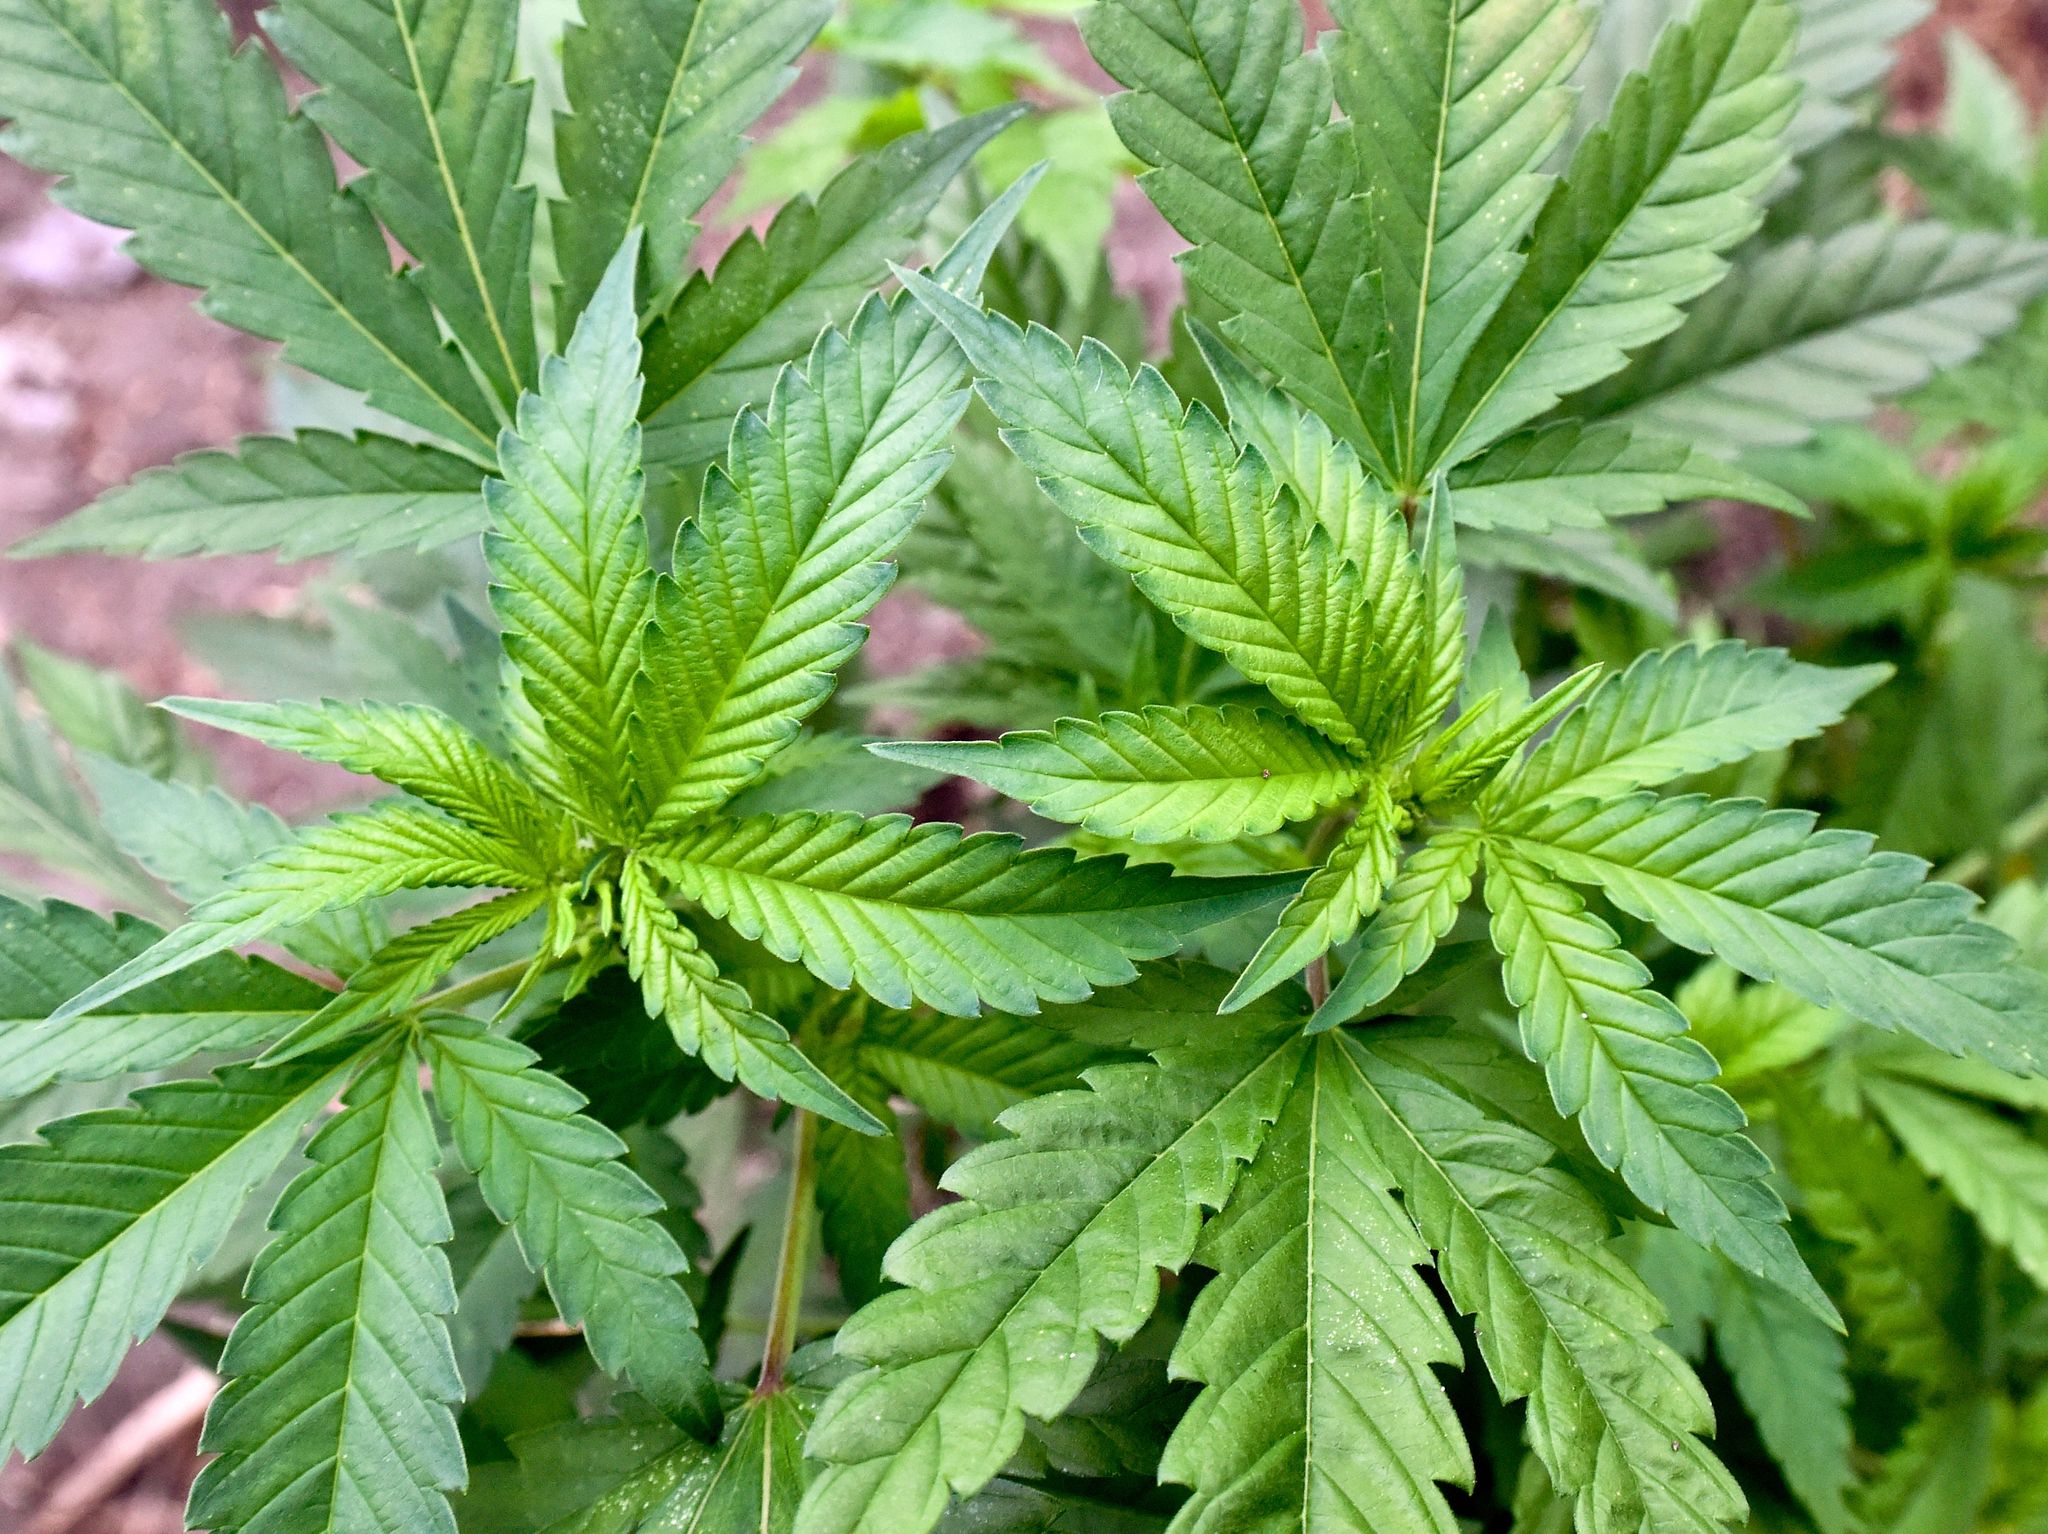 Cannabis ist eine psychoaktive Substanz aus der Hanfpflanze.